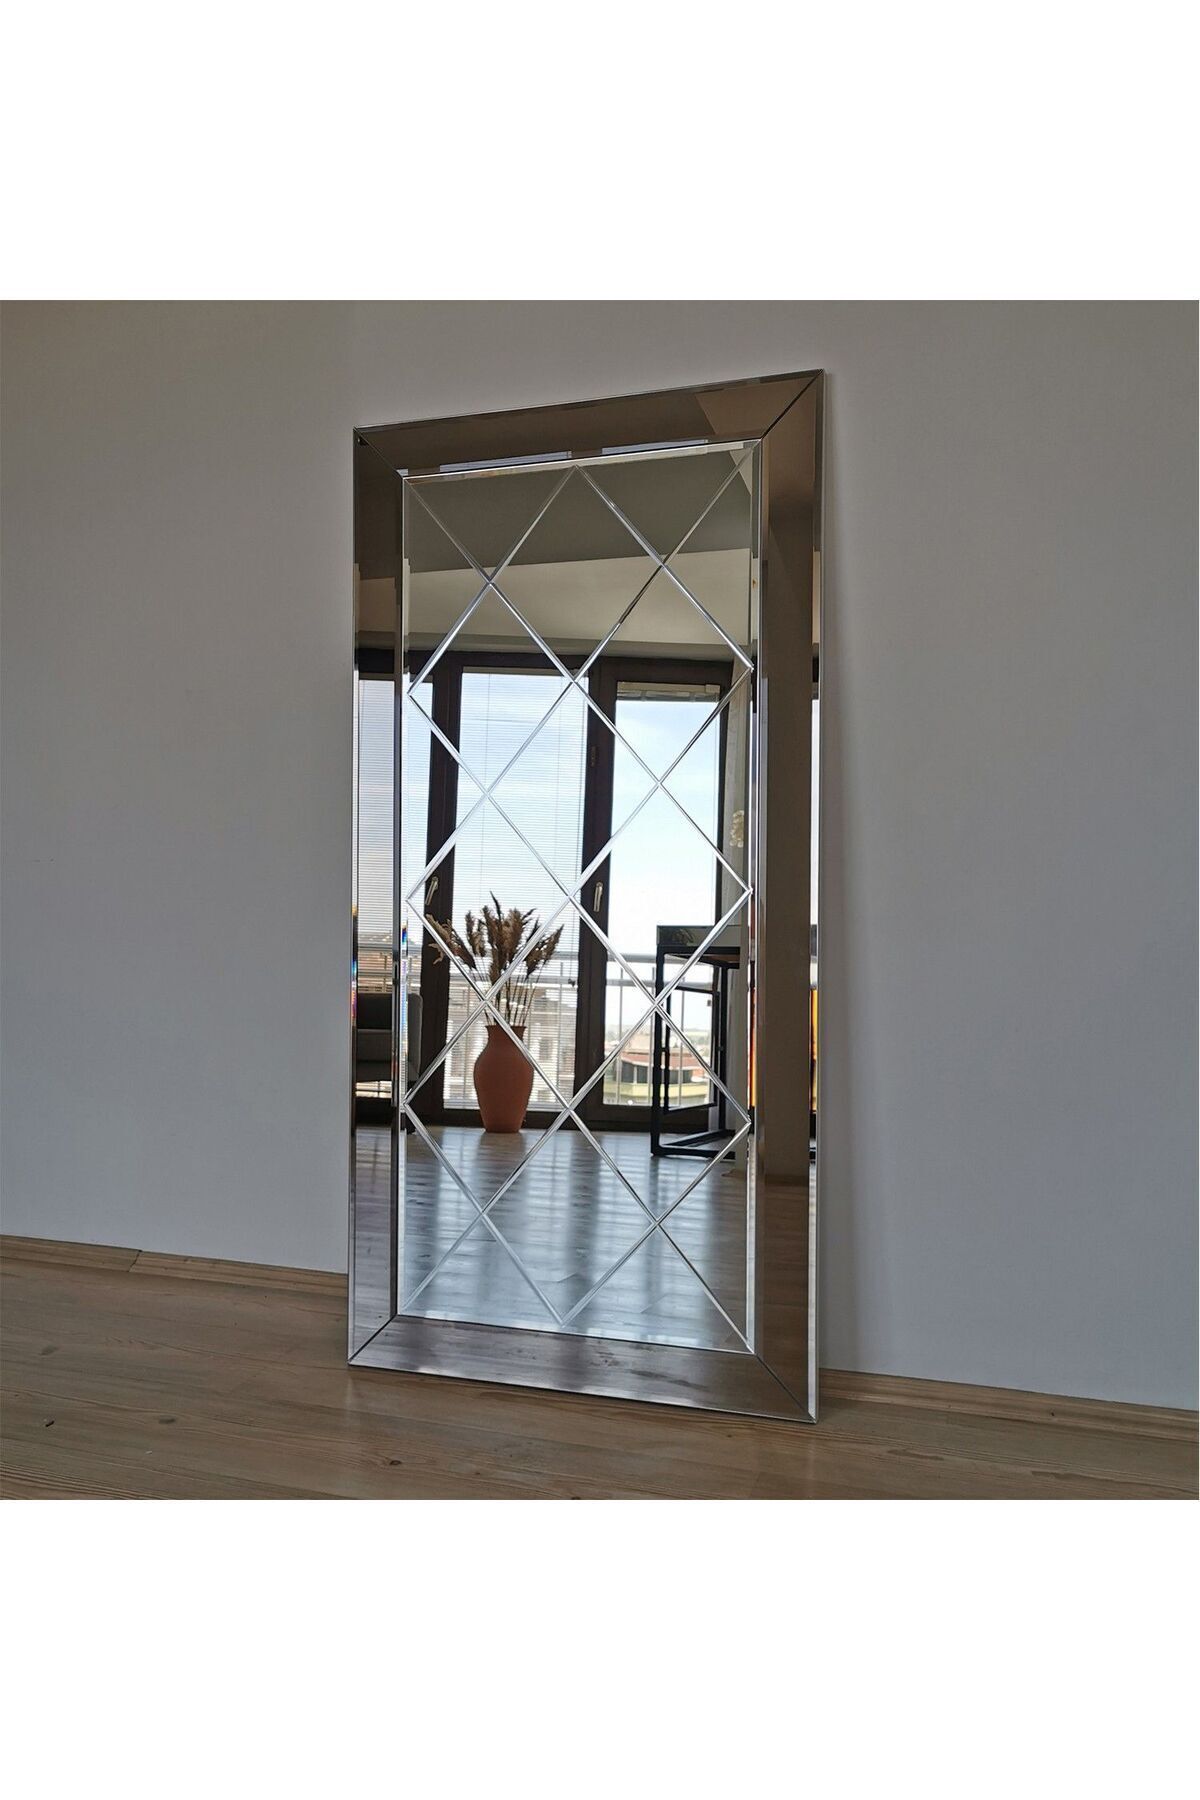 CG HOME Dekoratif Baklava Desenli Bizoteli Salon Ofis Konsol Aynası Bronz Ayna 120cm X 60cm